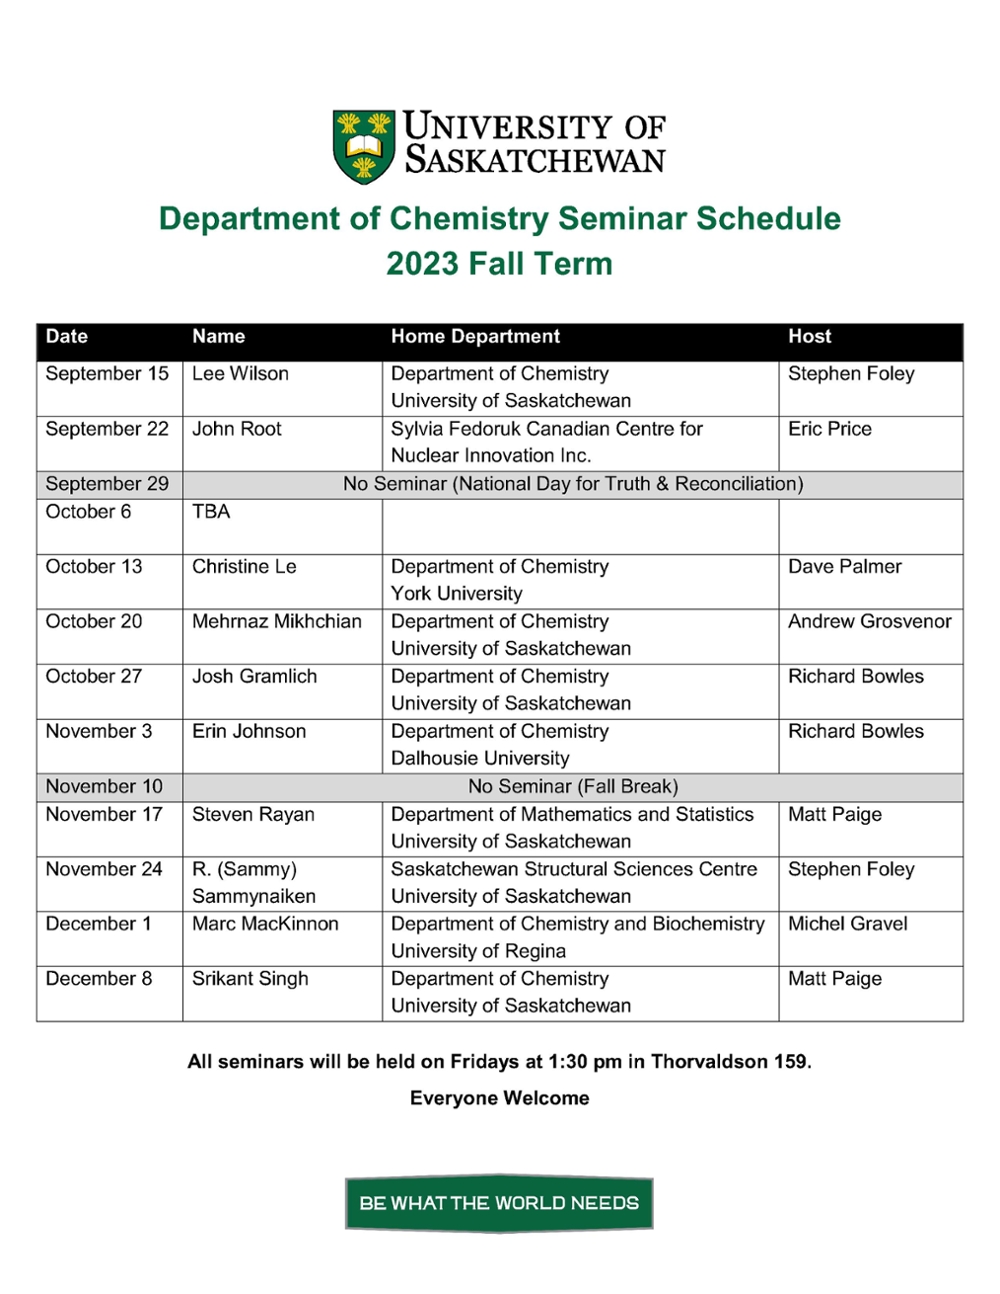 Seminar Schedule Fall 2023